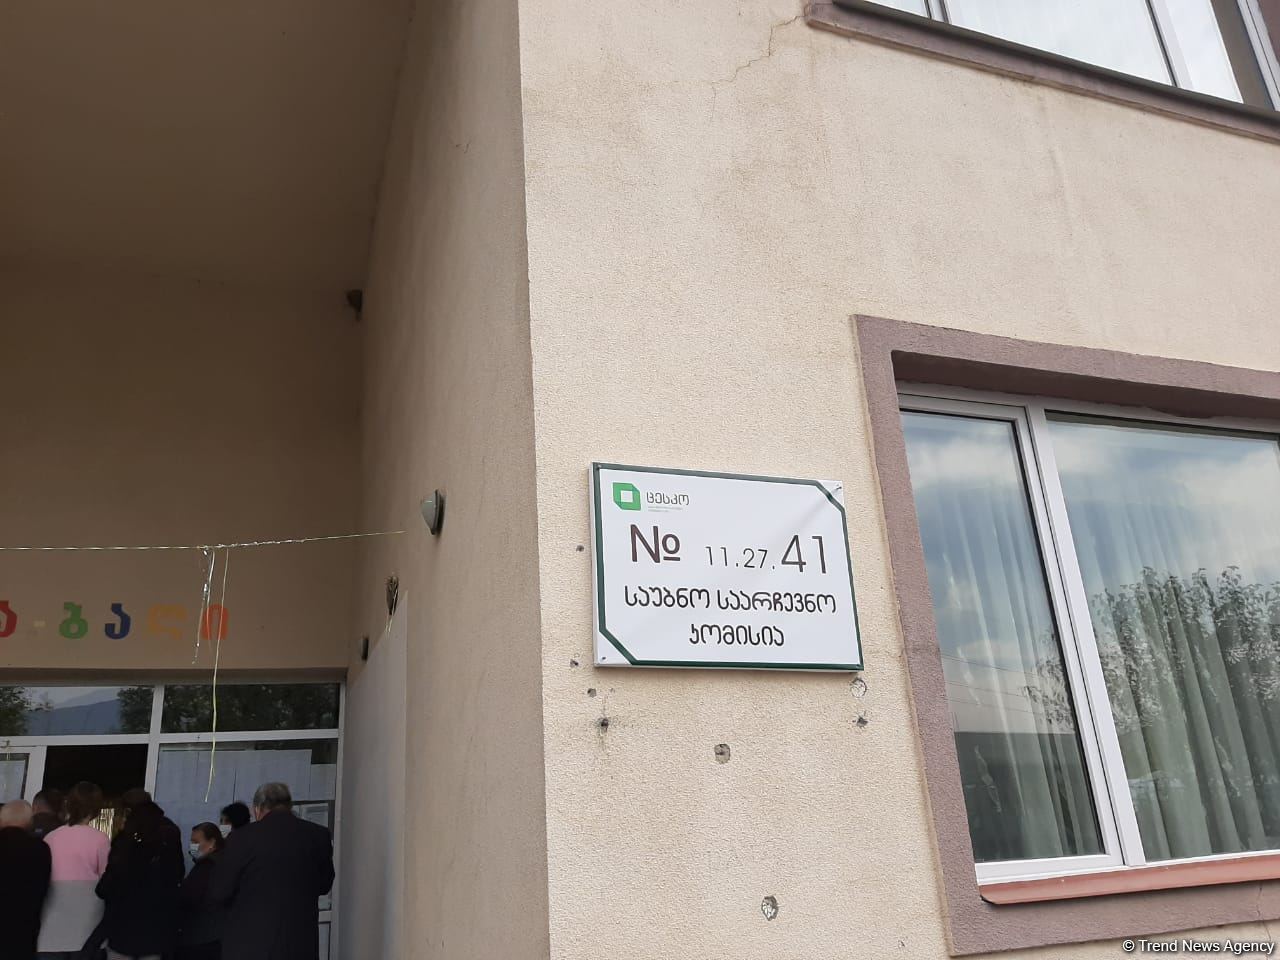 Ход голосования на парламентских выборах в Грузии нормальный - Арзу Нагиев (ФОТО)